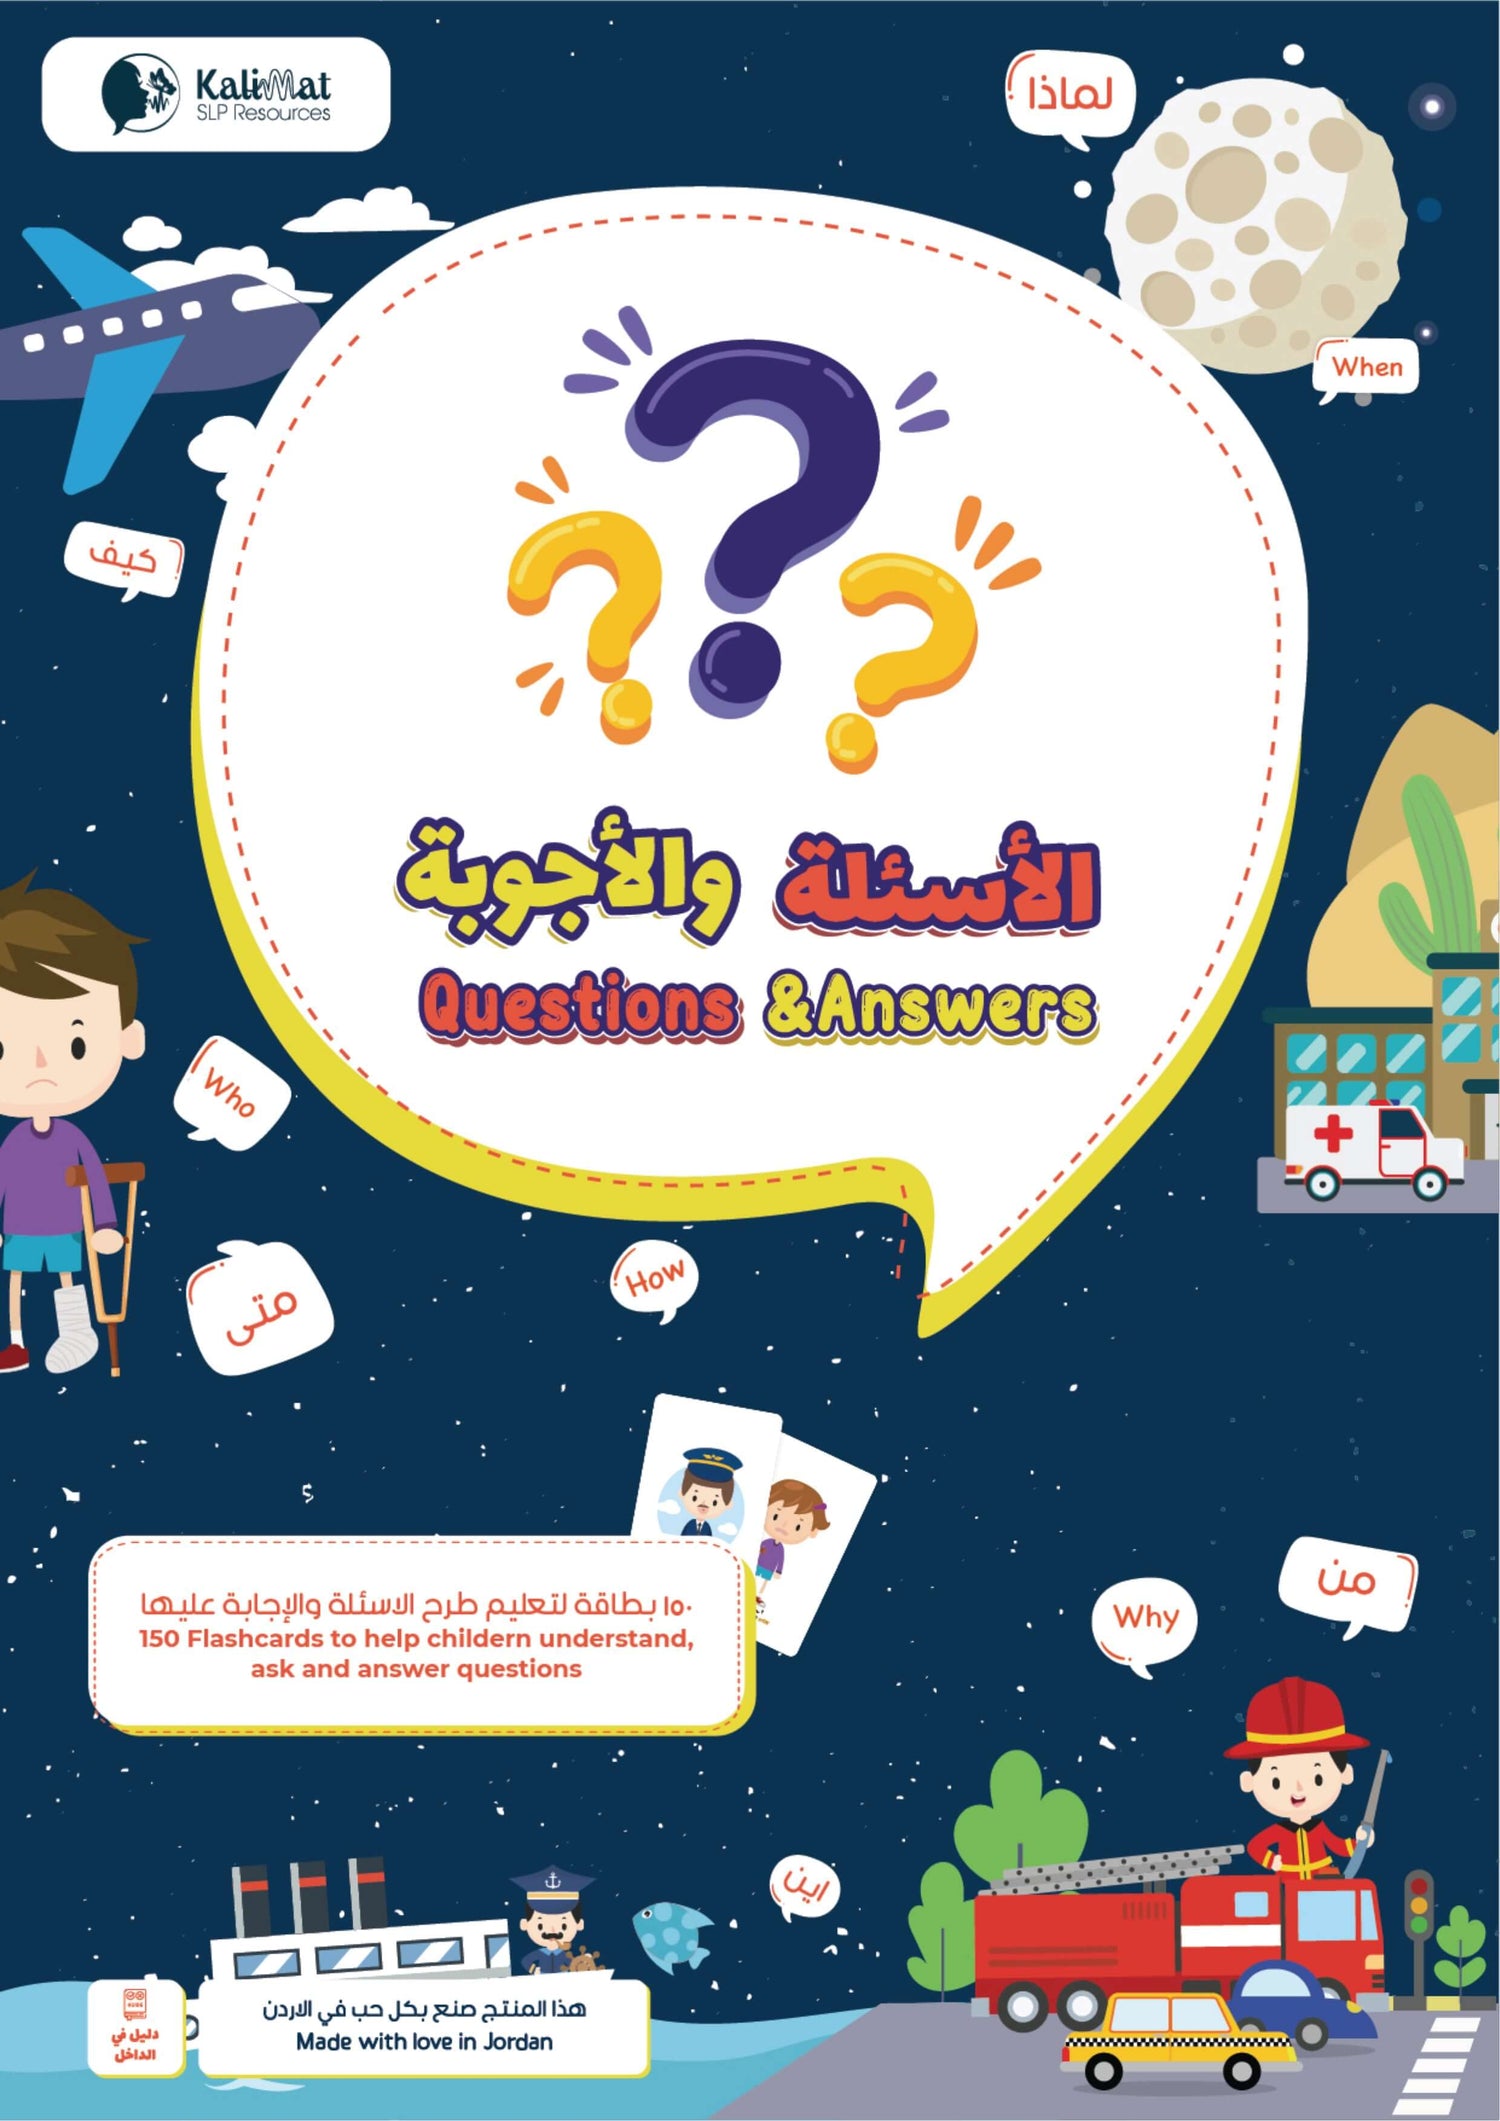 أسئلة وأجوبة - لعبة البطاقات التعليمية من كلمات لتعزيز لغة الأطفال